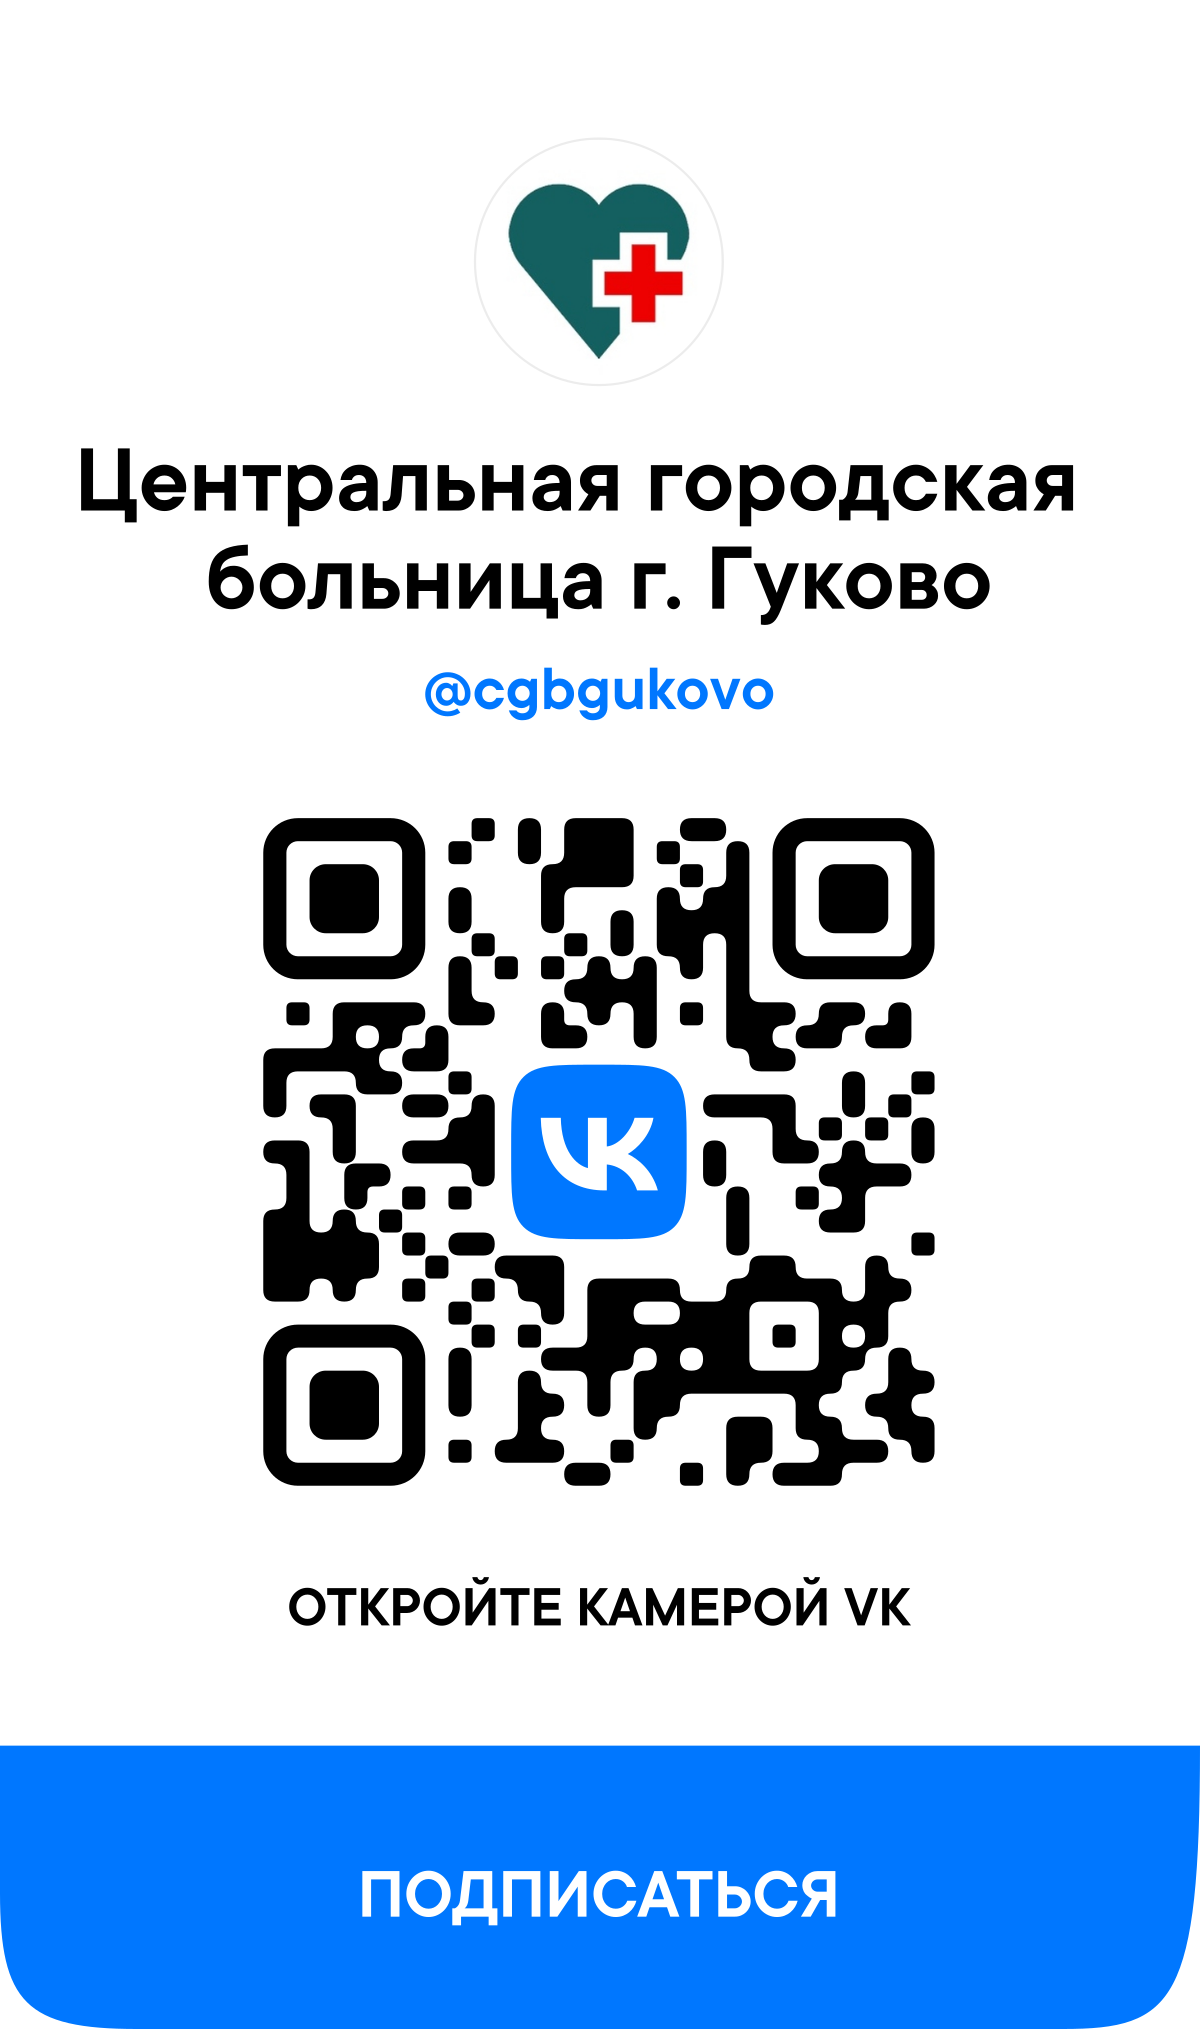 Сообщество ВКонтакте